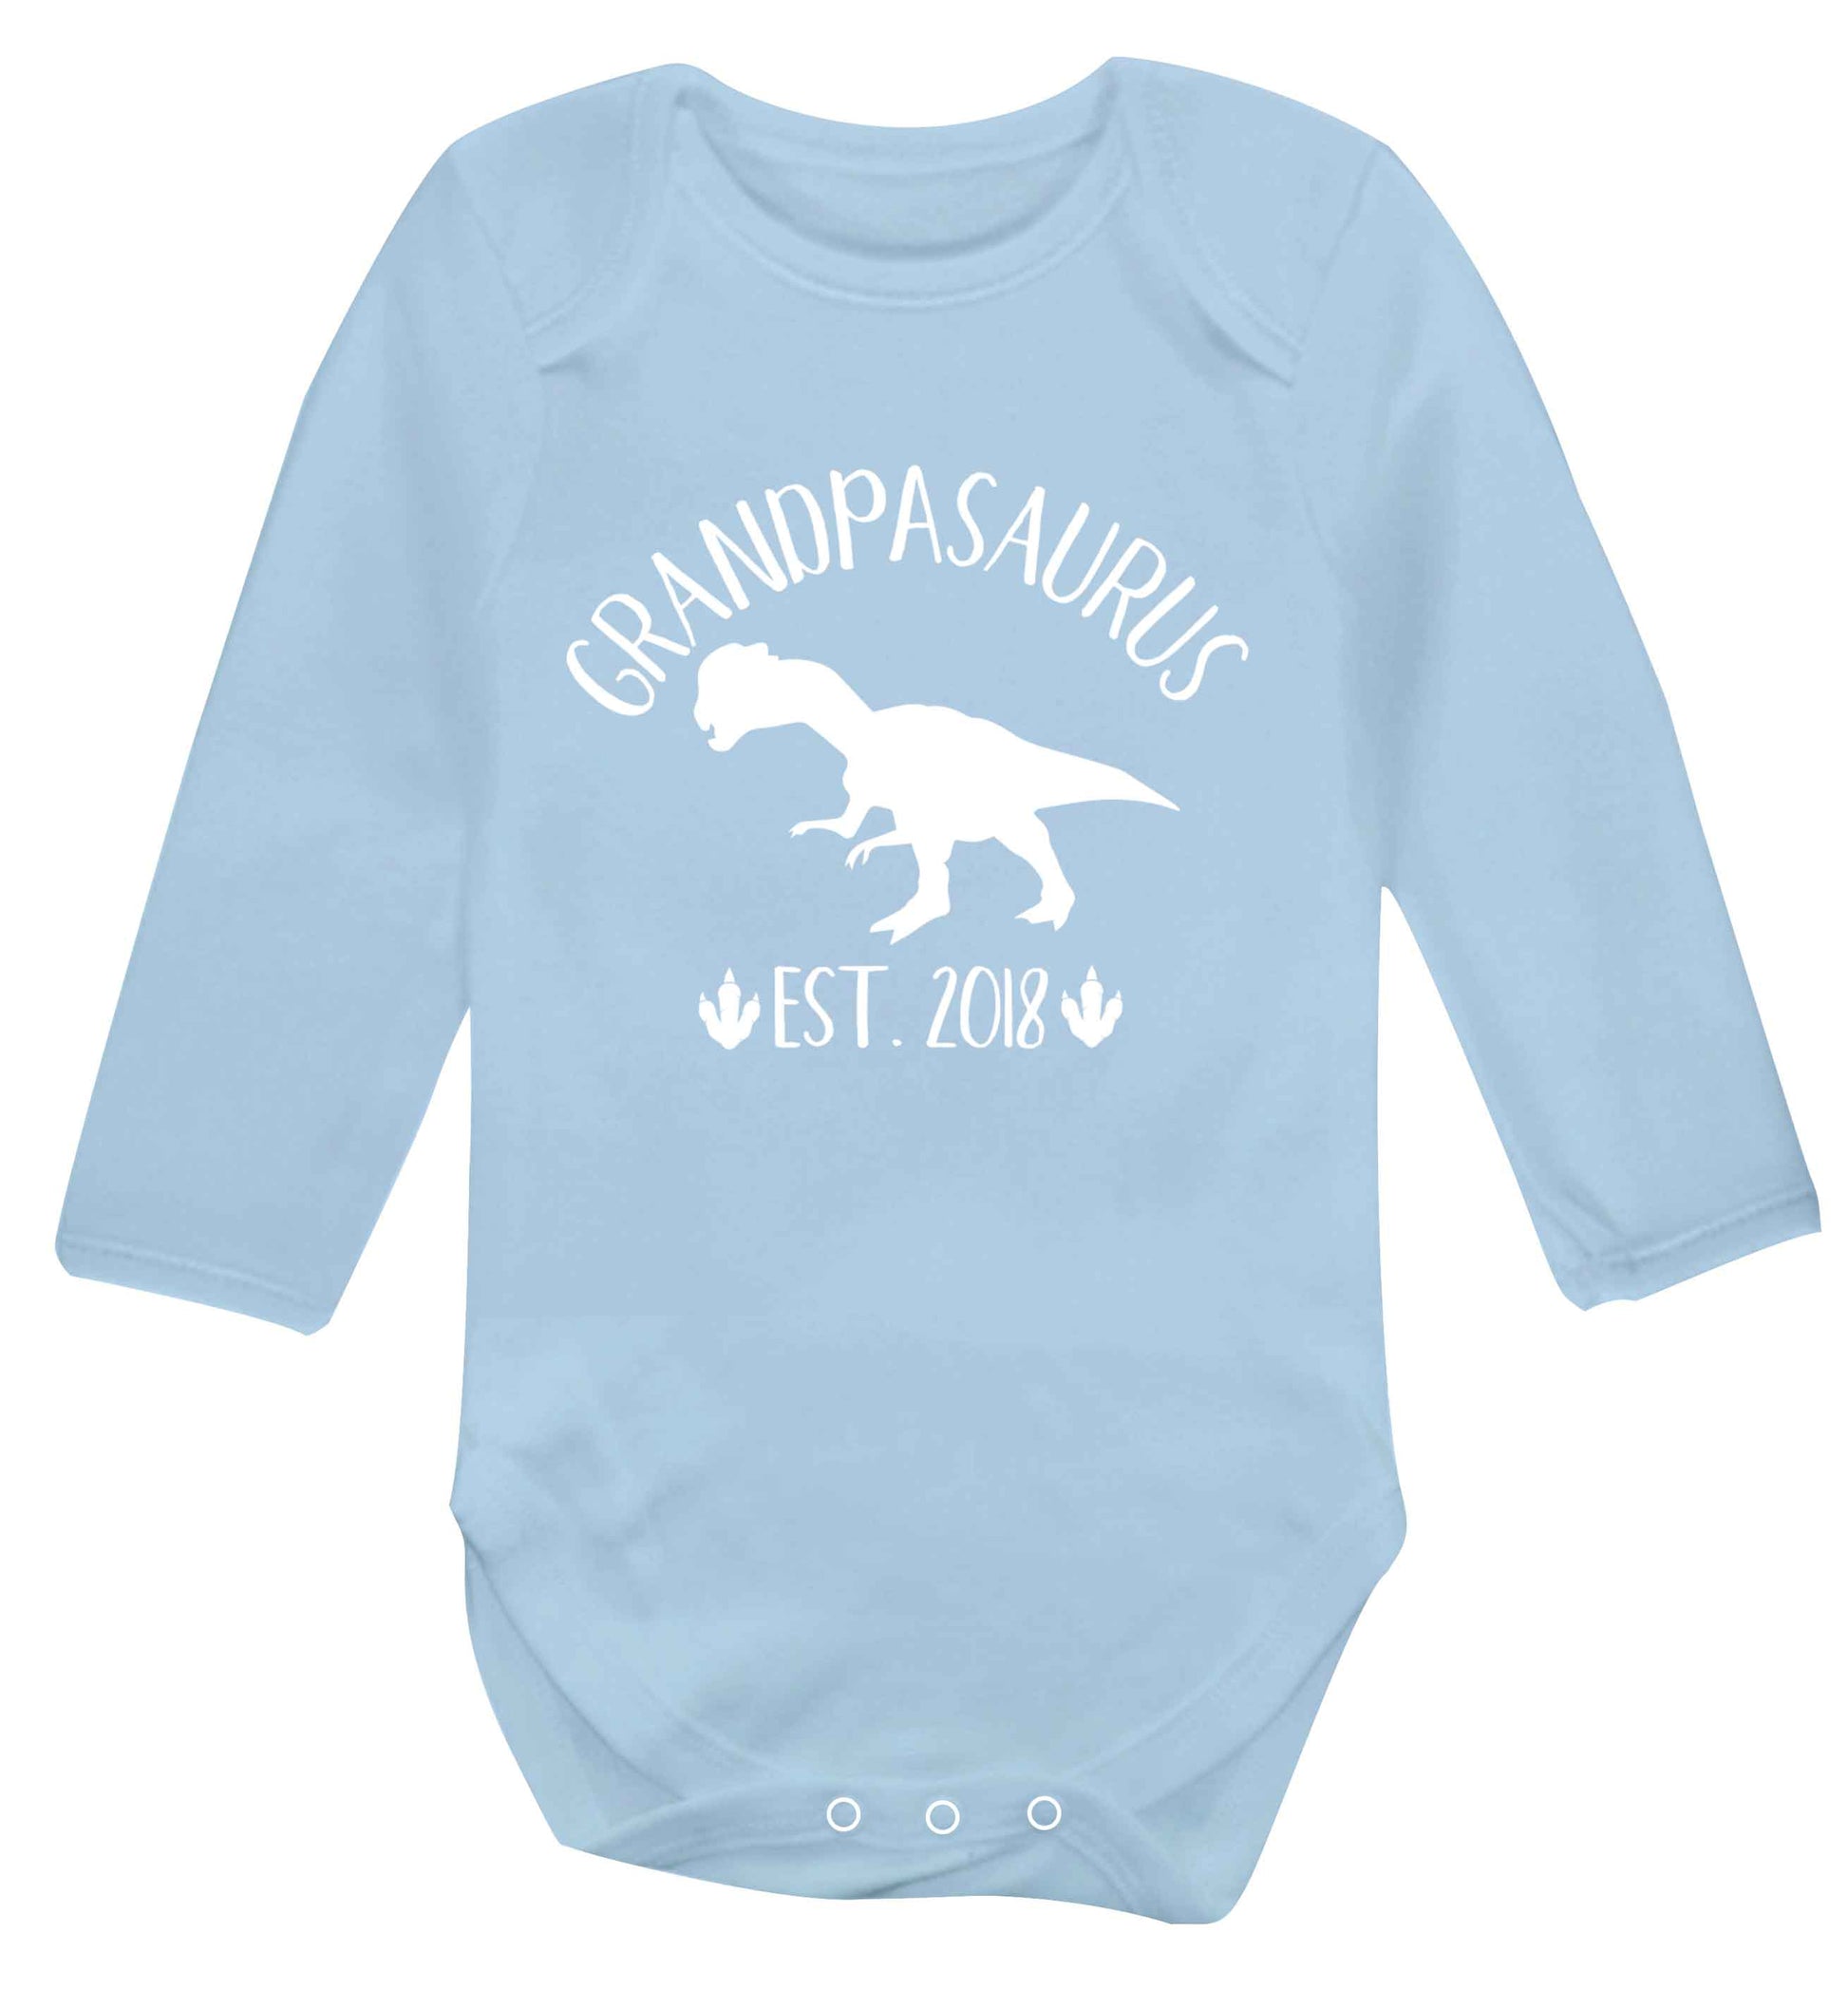 Personalised grandpasaurus since (custom date) Baby Vest long sleeved pale blue 6-12 months